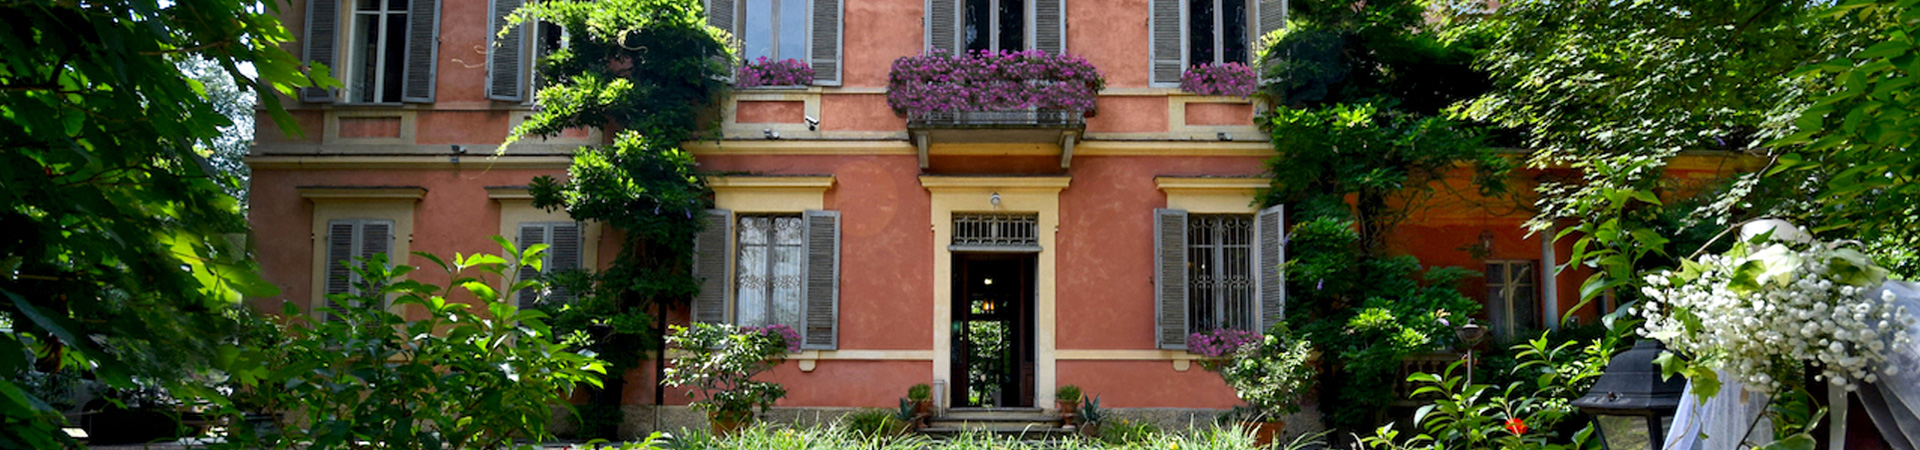 Villa San Domenico - Location matrimoni Il Briccone Torino